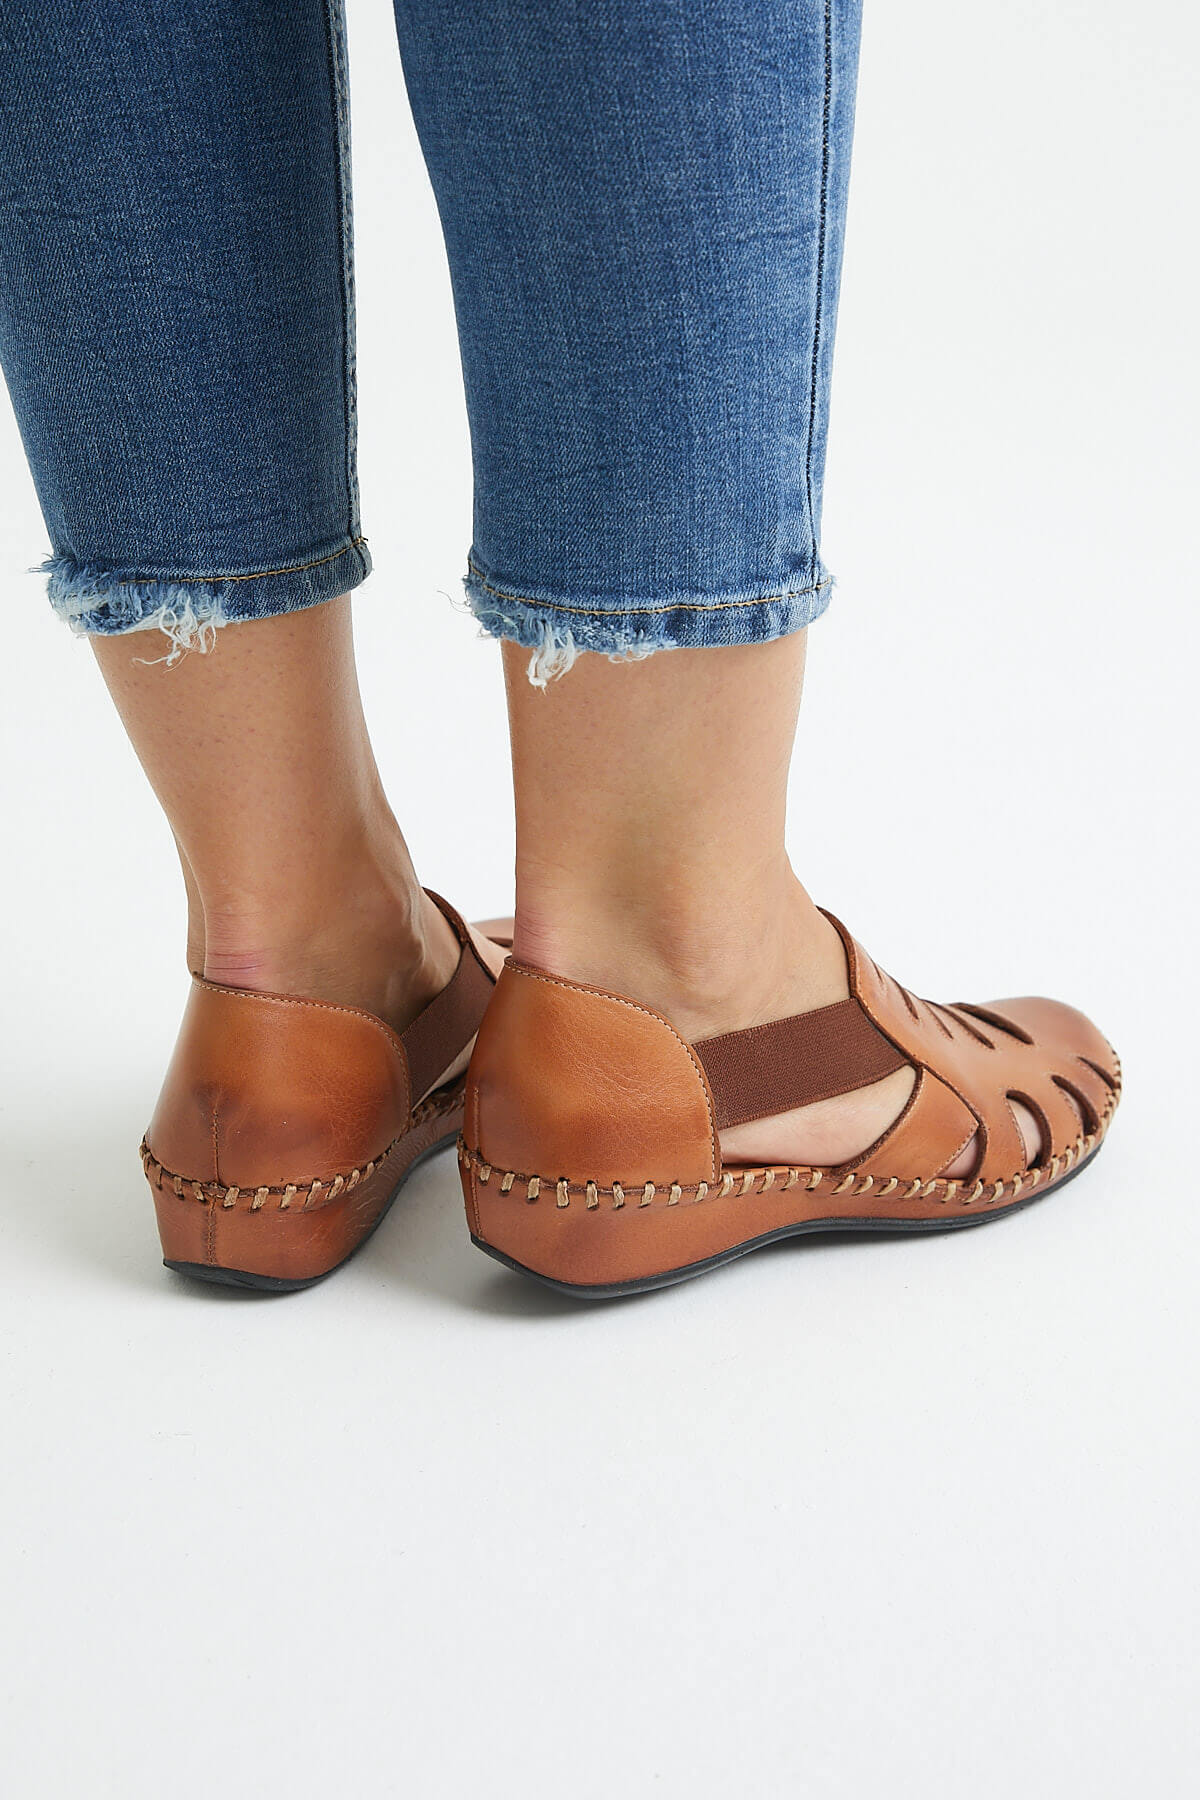 Kadın Comfort Deri Sandalet Taba 18791395